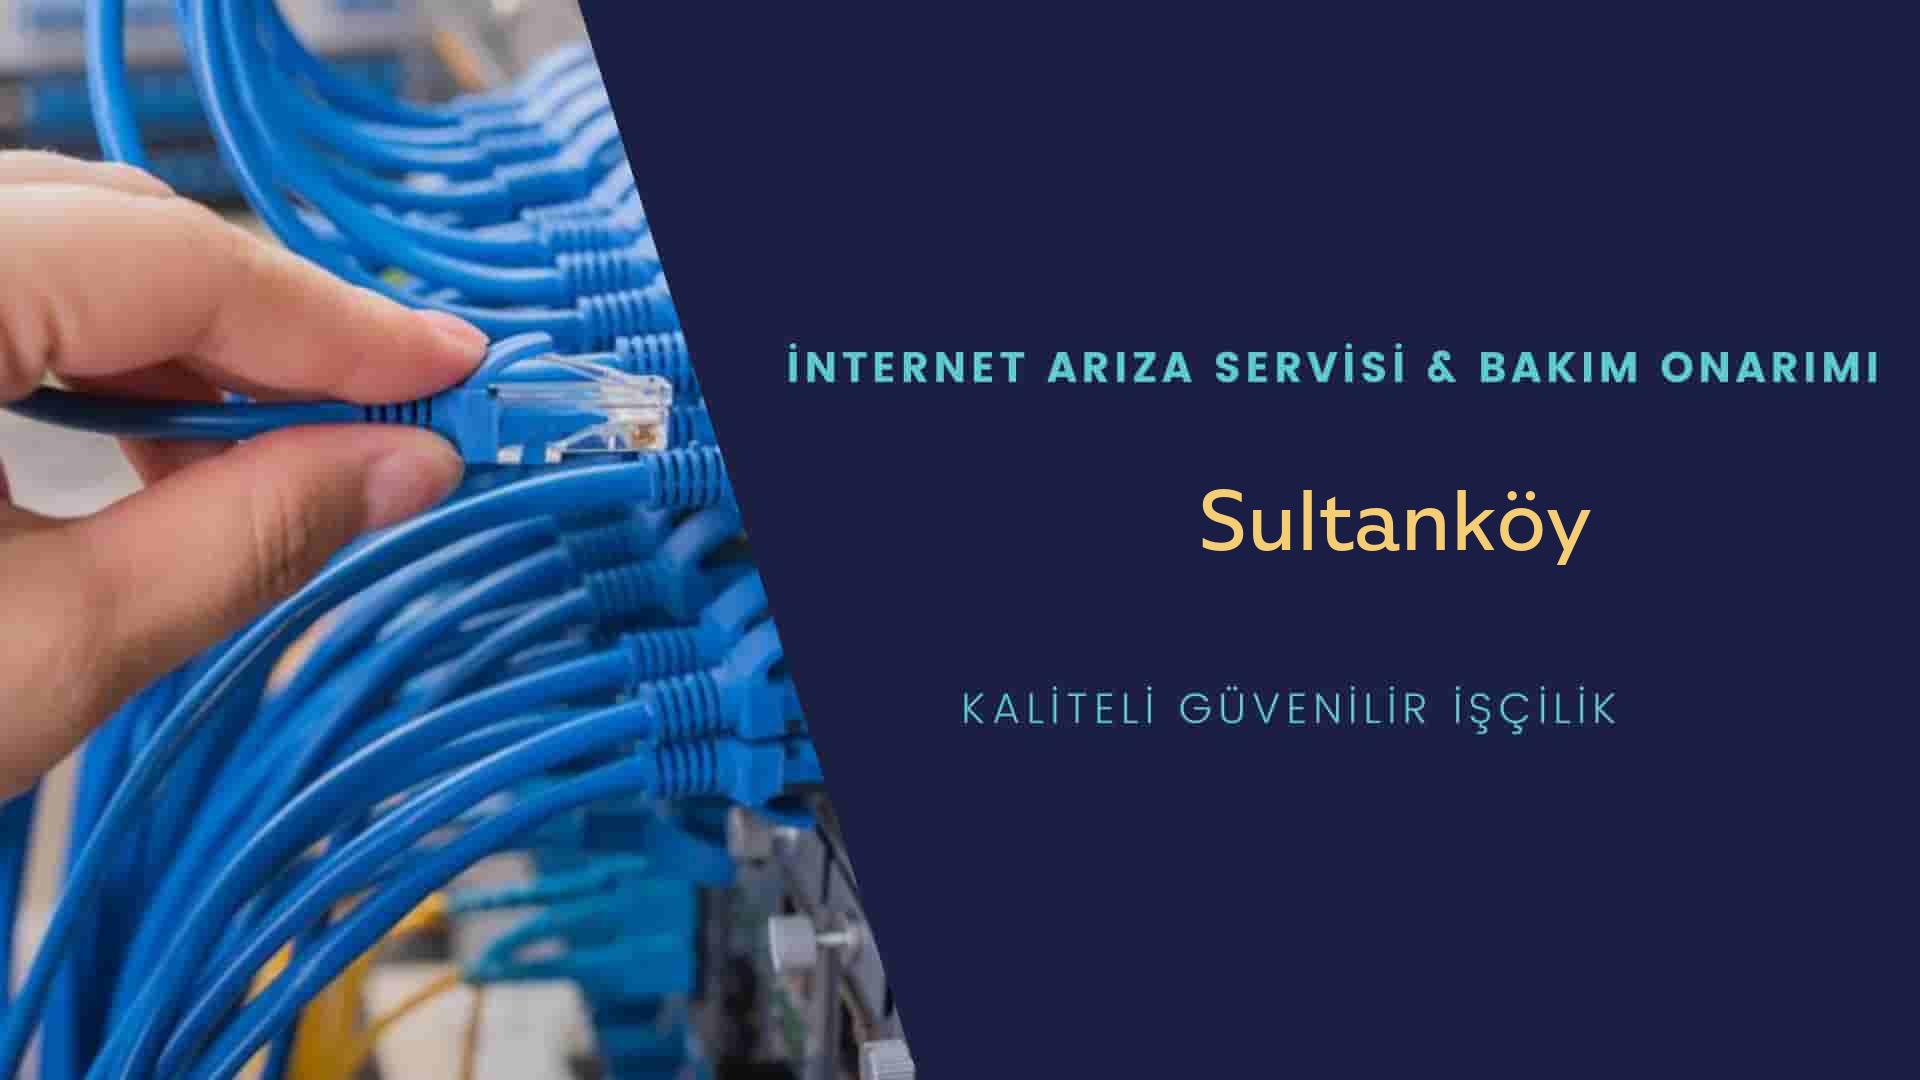 Sultanköy internet kablosu çekimi yapan yerler veya elektrikçiler mi? arıyorsunuz doğru yerdesiniz o zaman sizlere 7/24 yardımcı olacak profesyonel ustalarımız bir telefon kadar yakındır size.